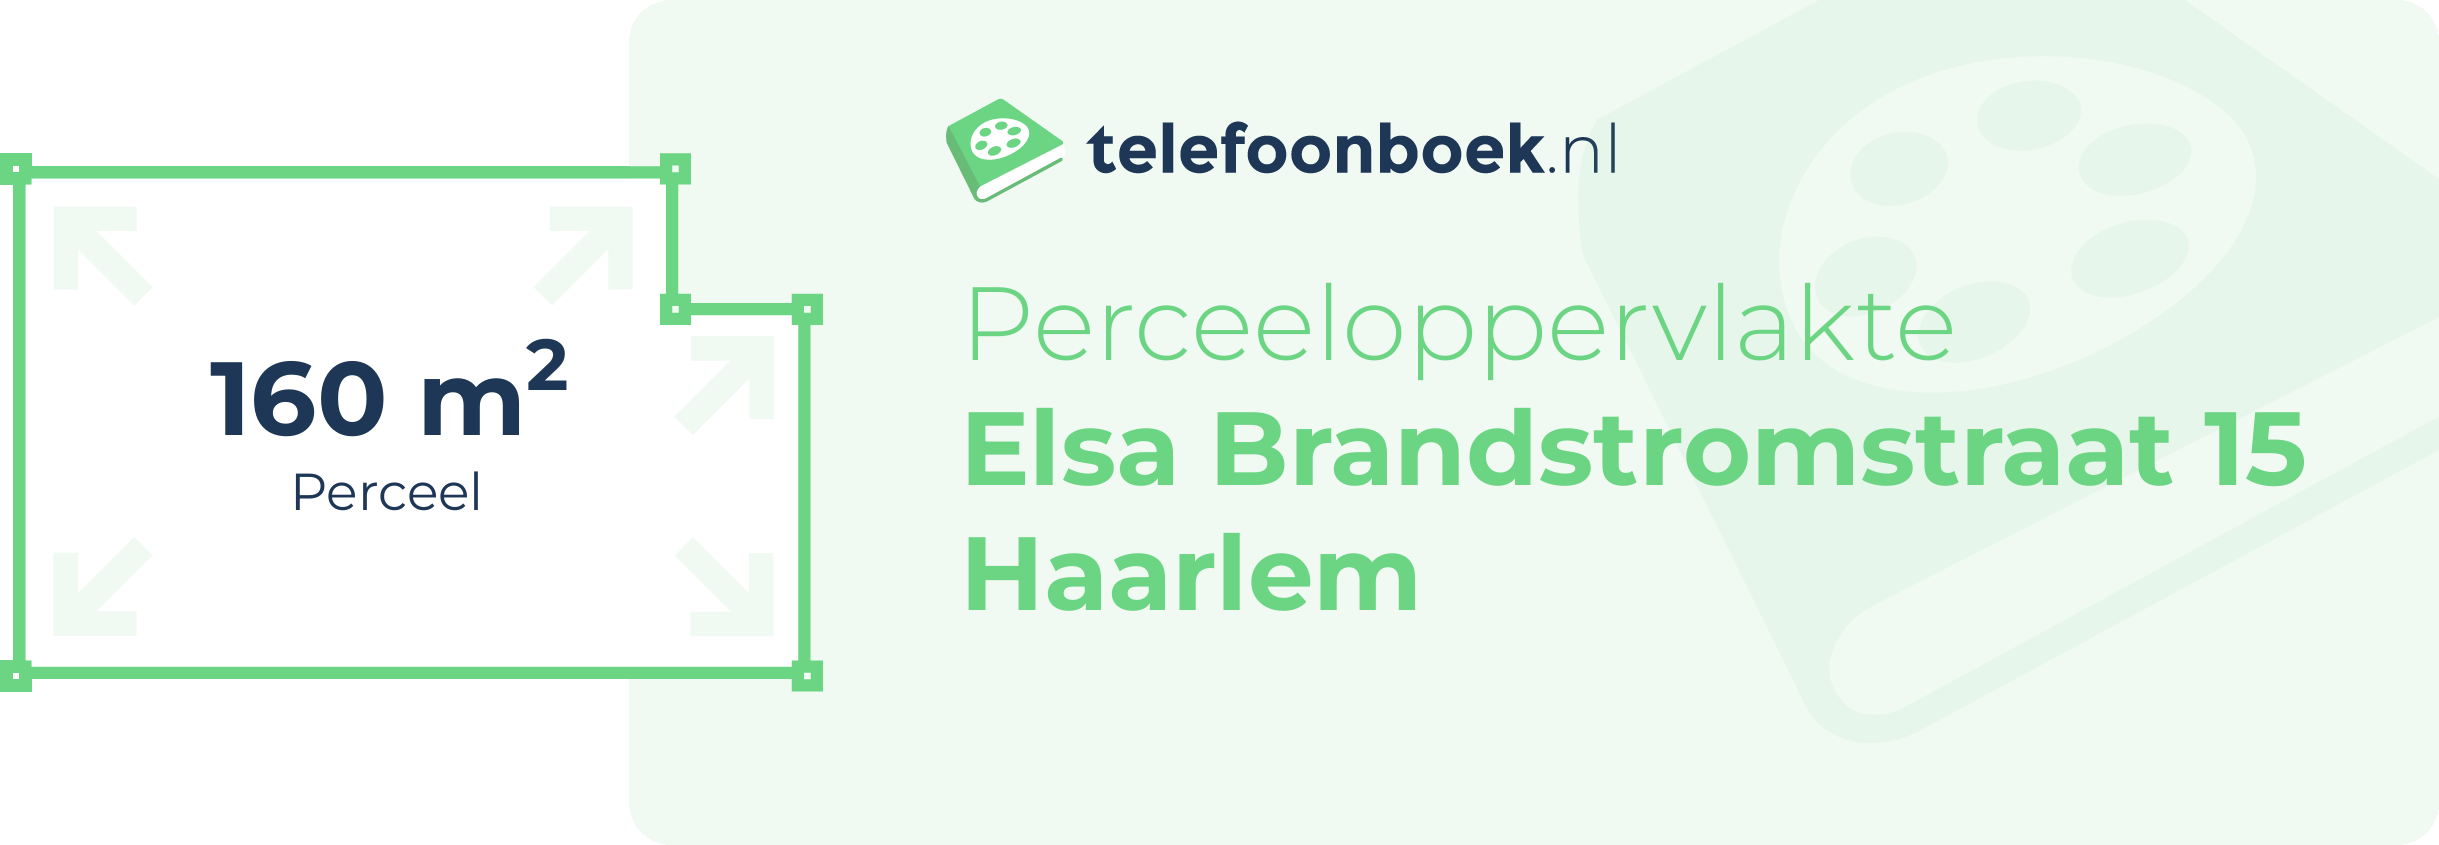 Perceeloppervlakte Elsa Brandstromstraat 15 Haarlem